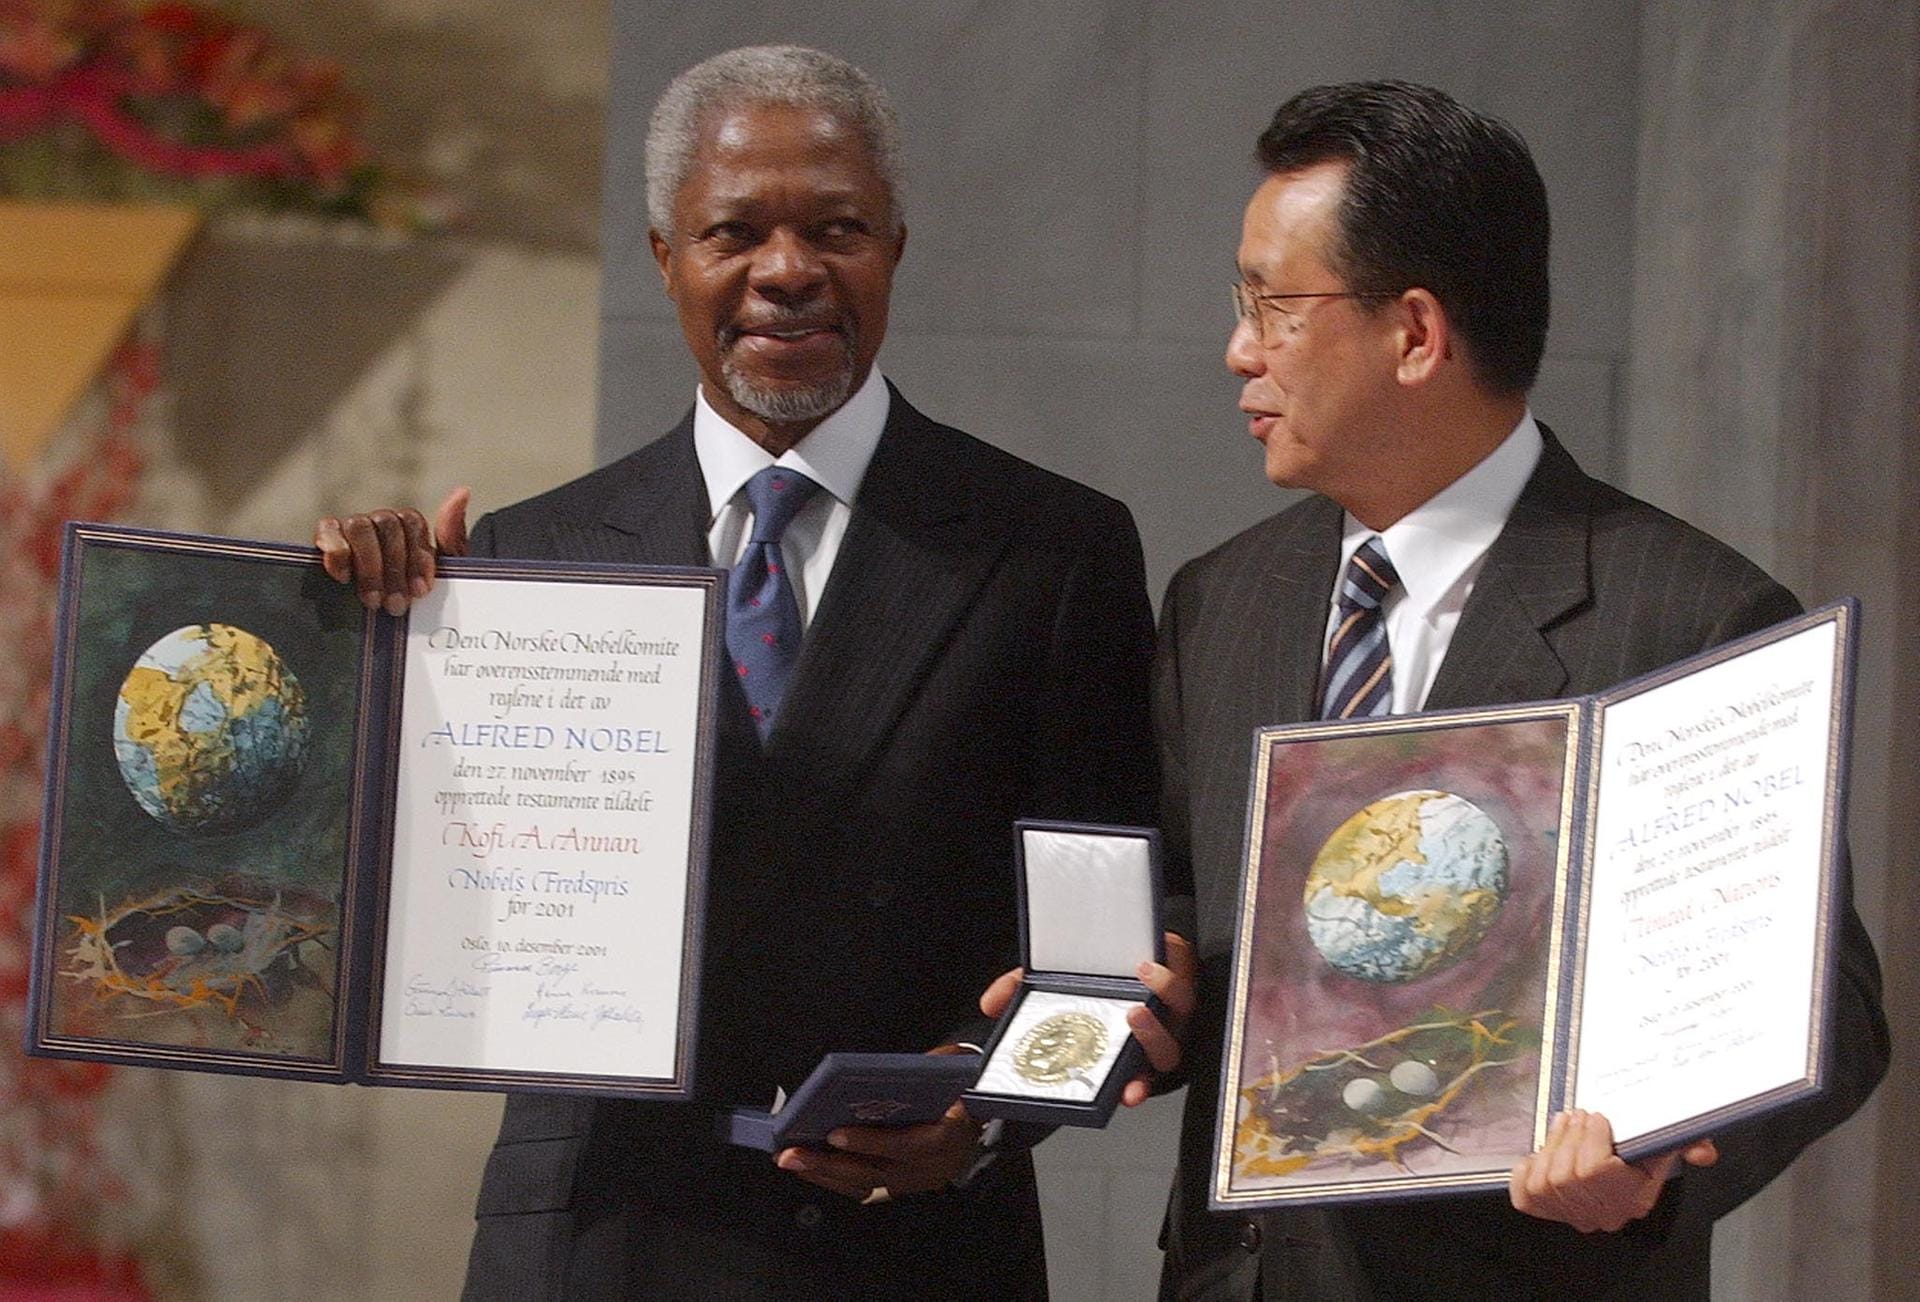 Für seine Bemühungen erhielt Annan am 10. Dezember 2001 den Friedensnobelpreis. Das Foto zeigt Annan bei der Verleihung in Oslo zusammen mit Han Seung Soo, den damaligen Präsidenten der 56. Sitzung der Generalversammlung der Vereinten Nationen.